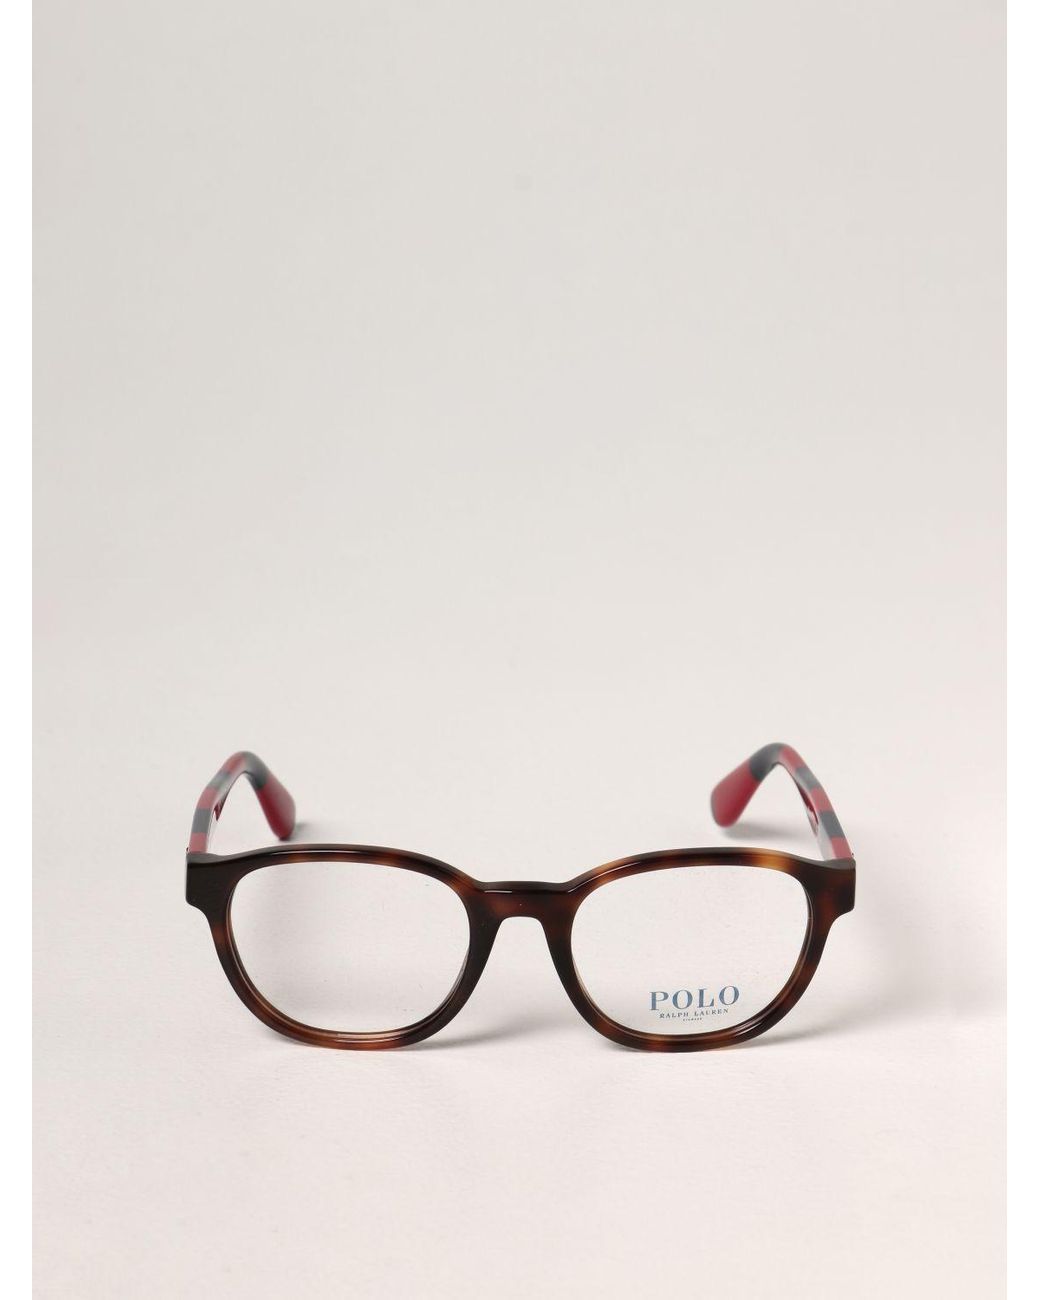 Polo Ralph Lauren Glasses for Men | Lyst